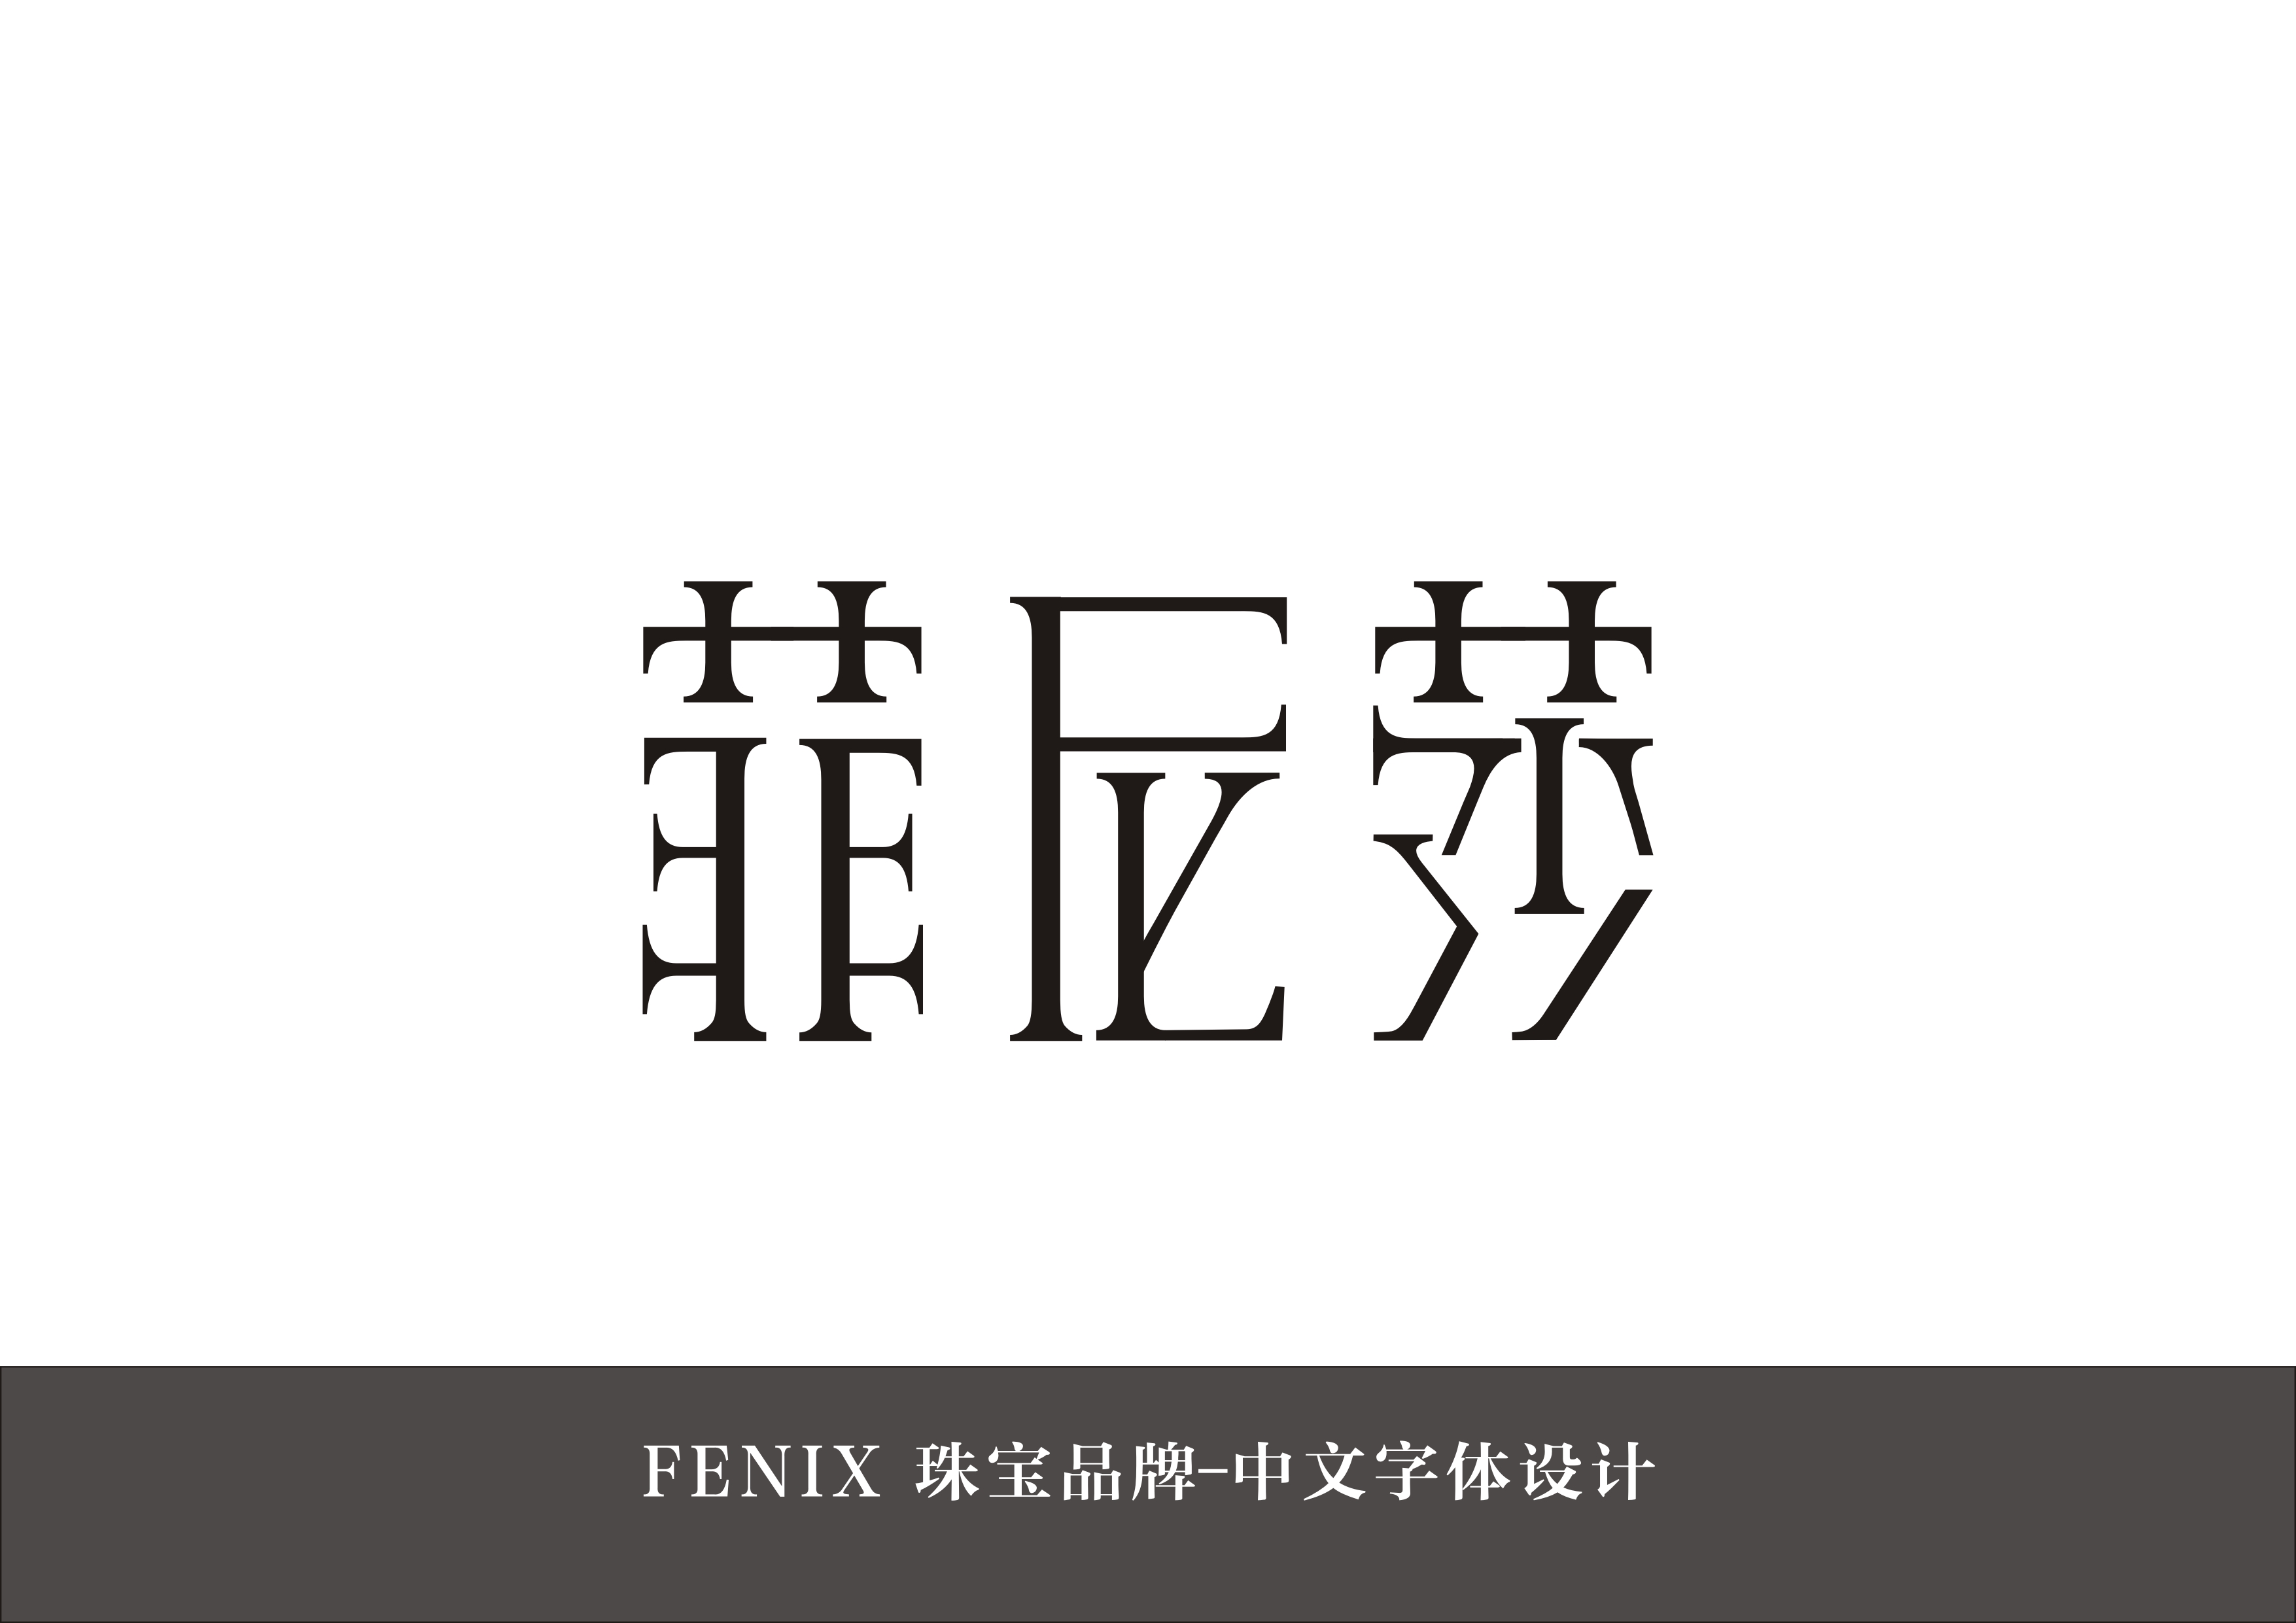 菲尼莎珠宝品牌中文字体设计